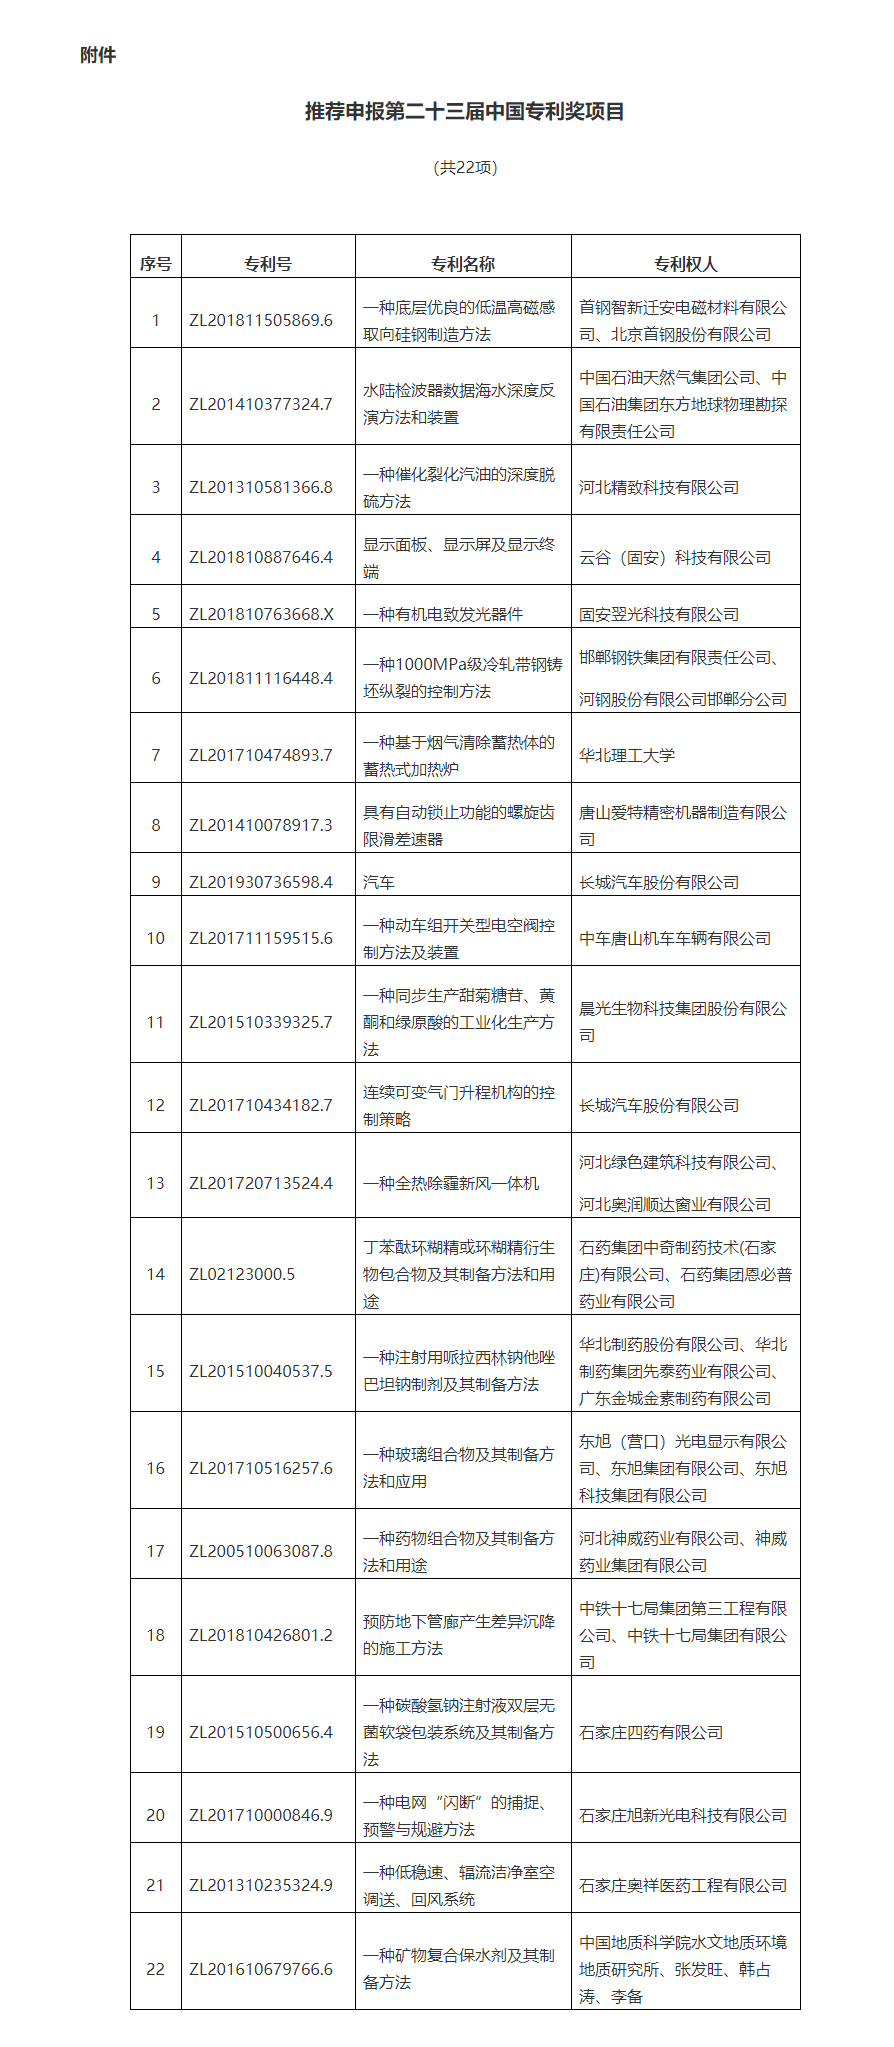 河北省市场监督管理局关于推荐申报第二十三届中国专利奖项目的公示.png